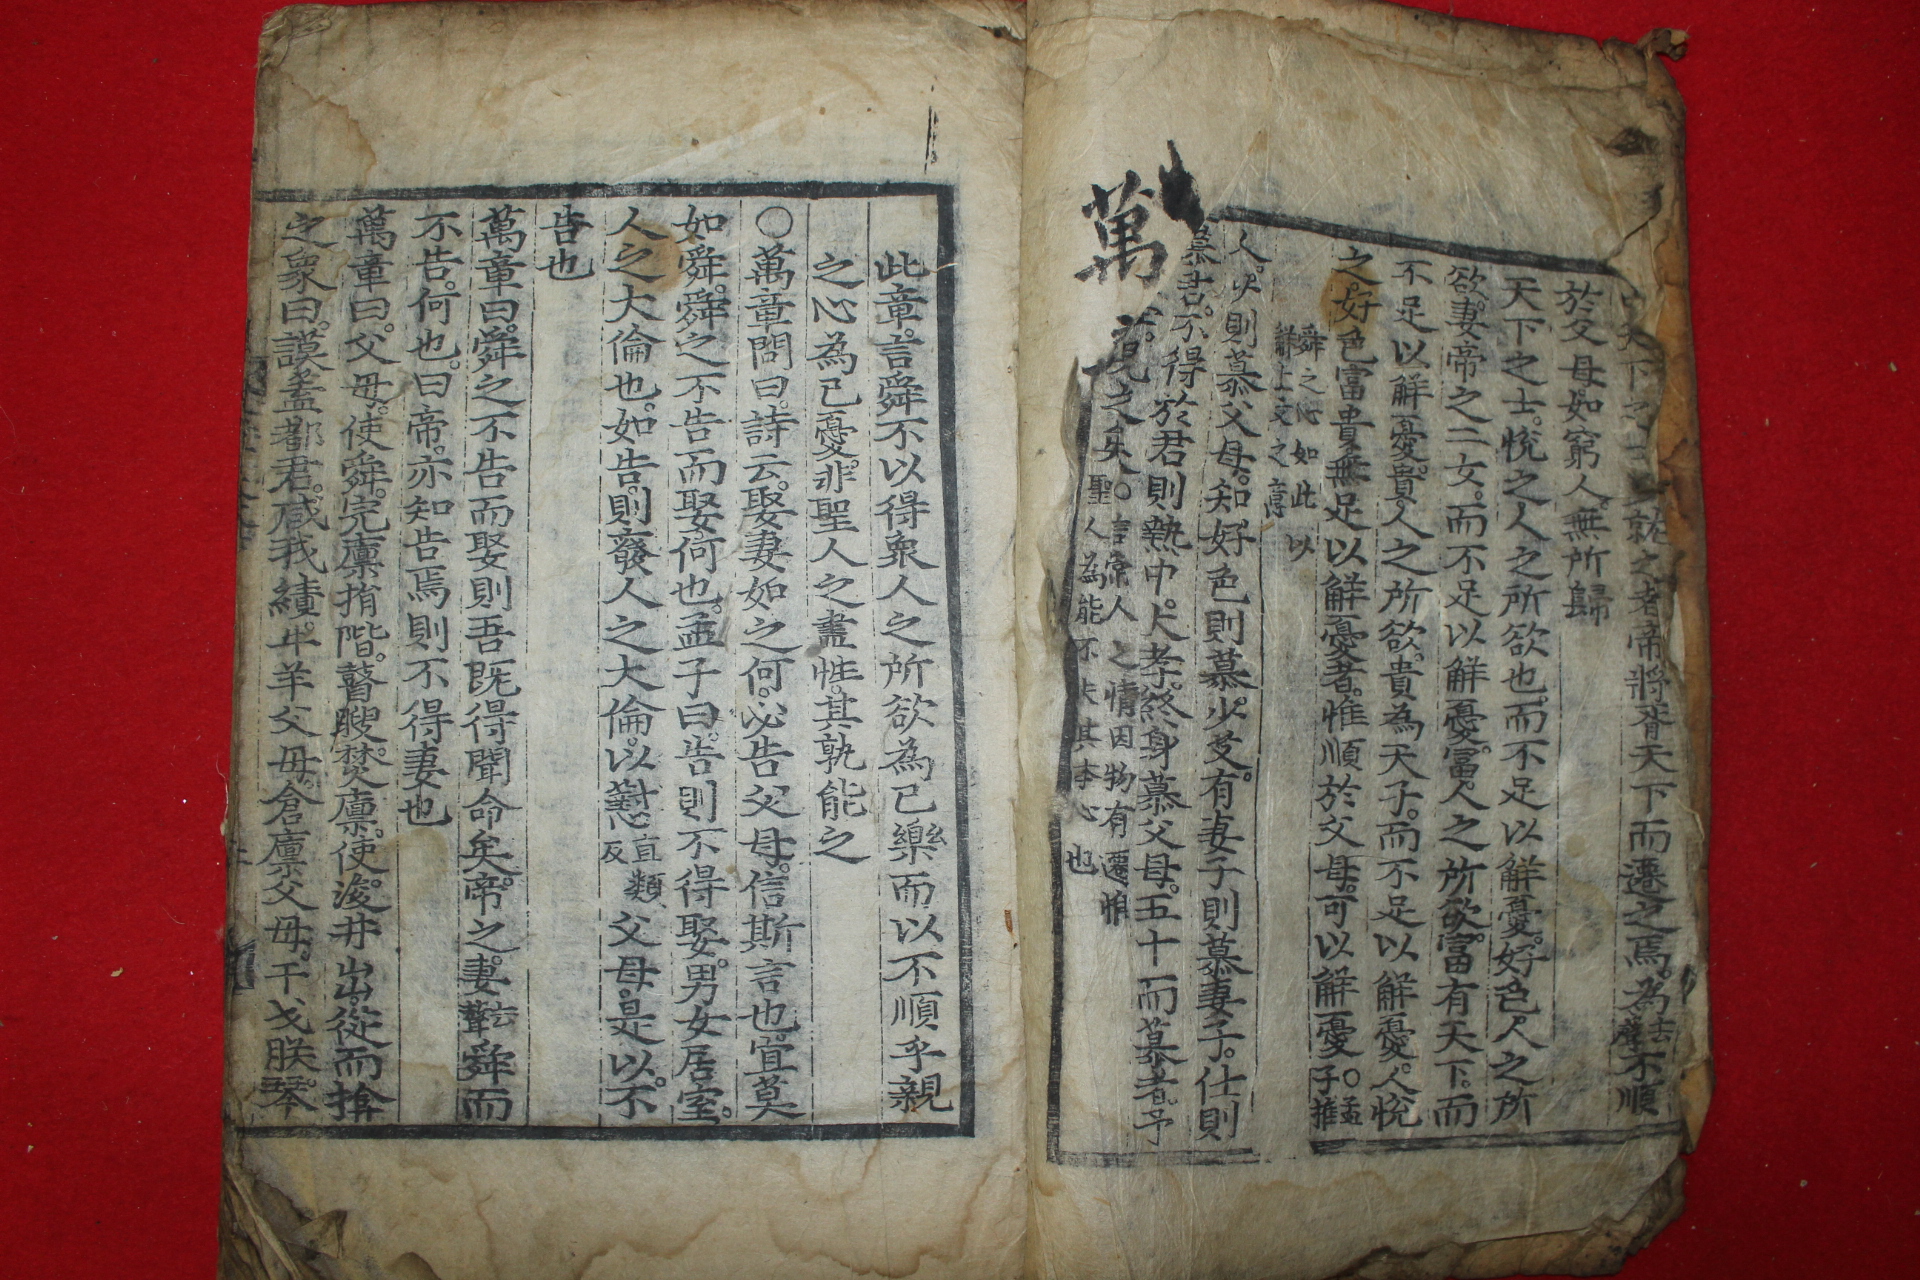 1601년 희귀고목판본 맹자대문(孟子大文.) 하권 1책